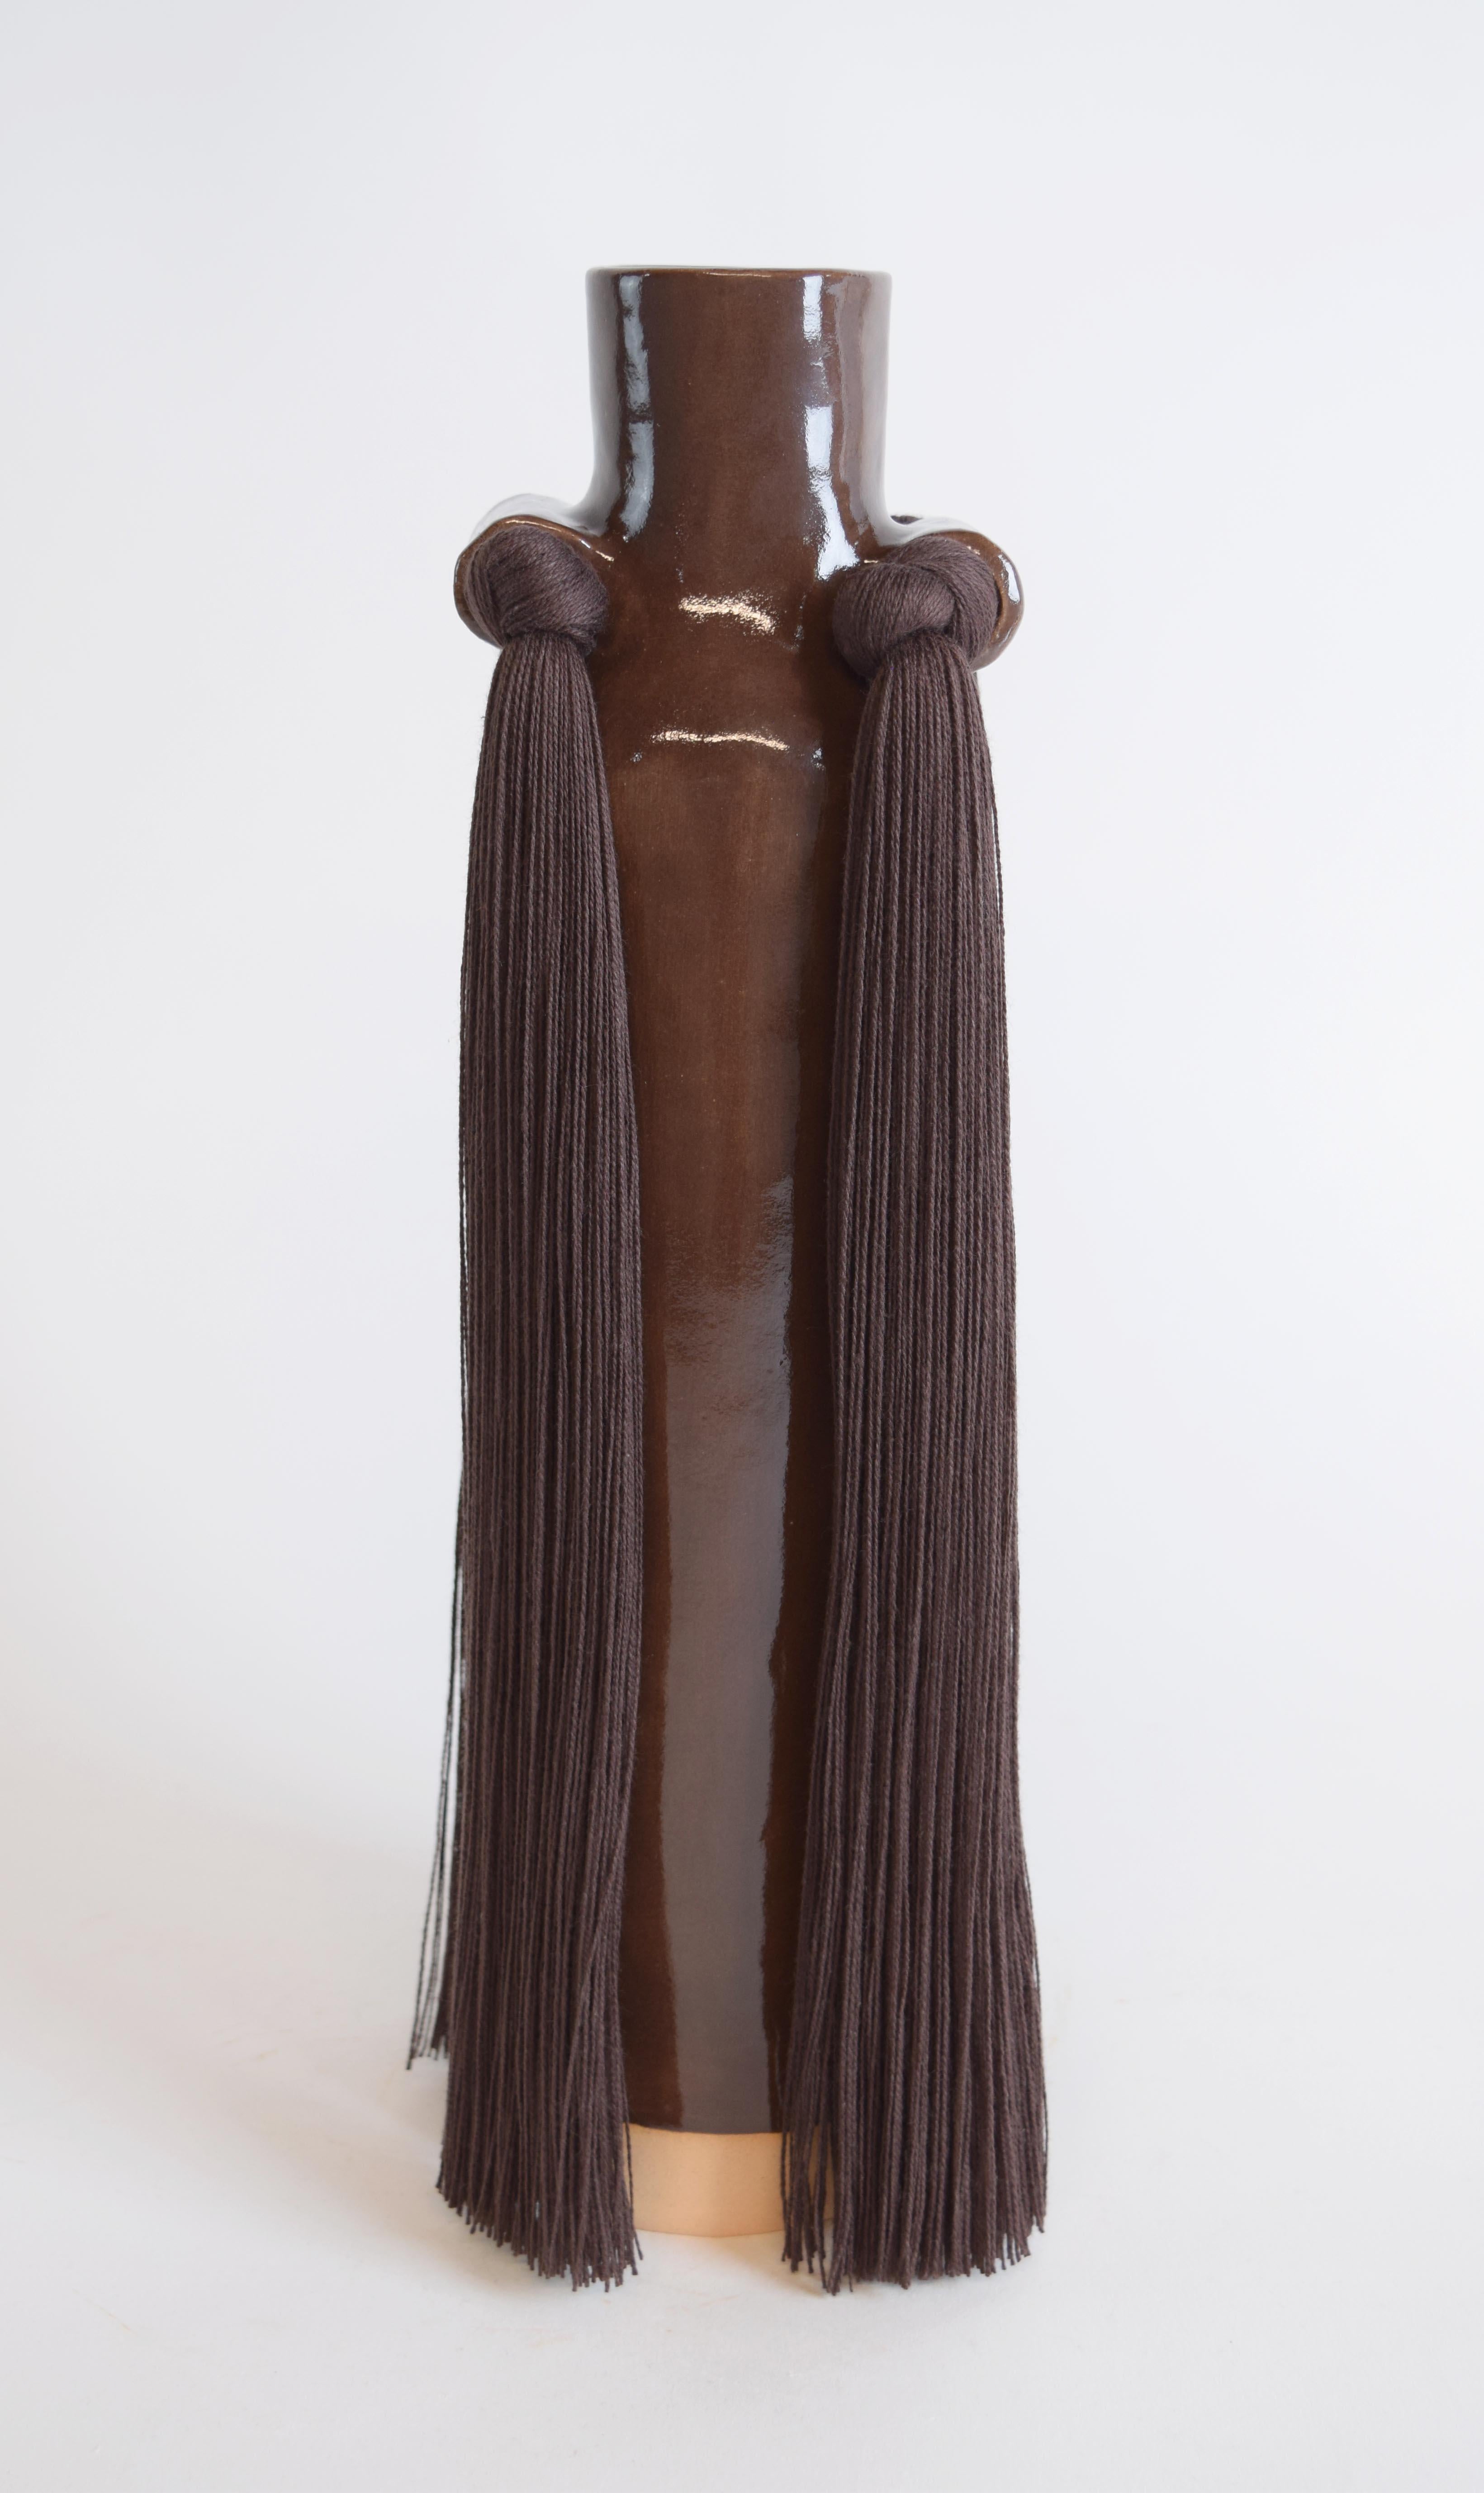 Vase #703 par Karen Gayle Tinney

Reprenant les détails caractéristiques d'autres pièces de la Collection S &Tradition, ce vase est une mise à jour de la silhouette traditionnelle en forme de goulot de bouteille.

Grès beige à glaçure brune, formé à